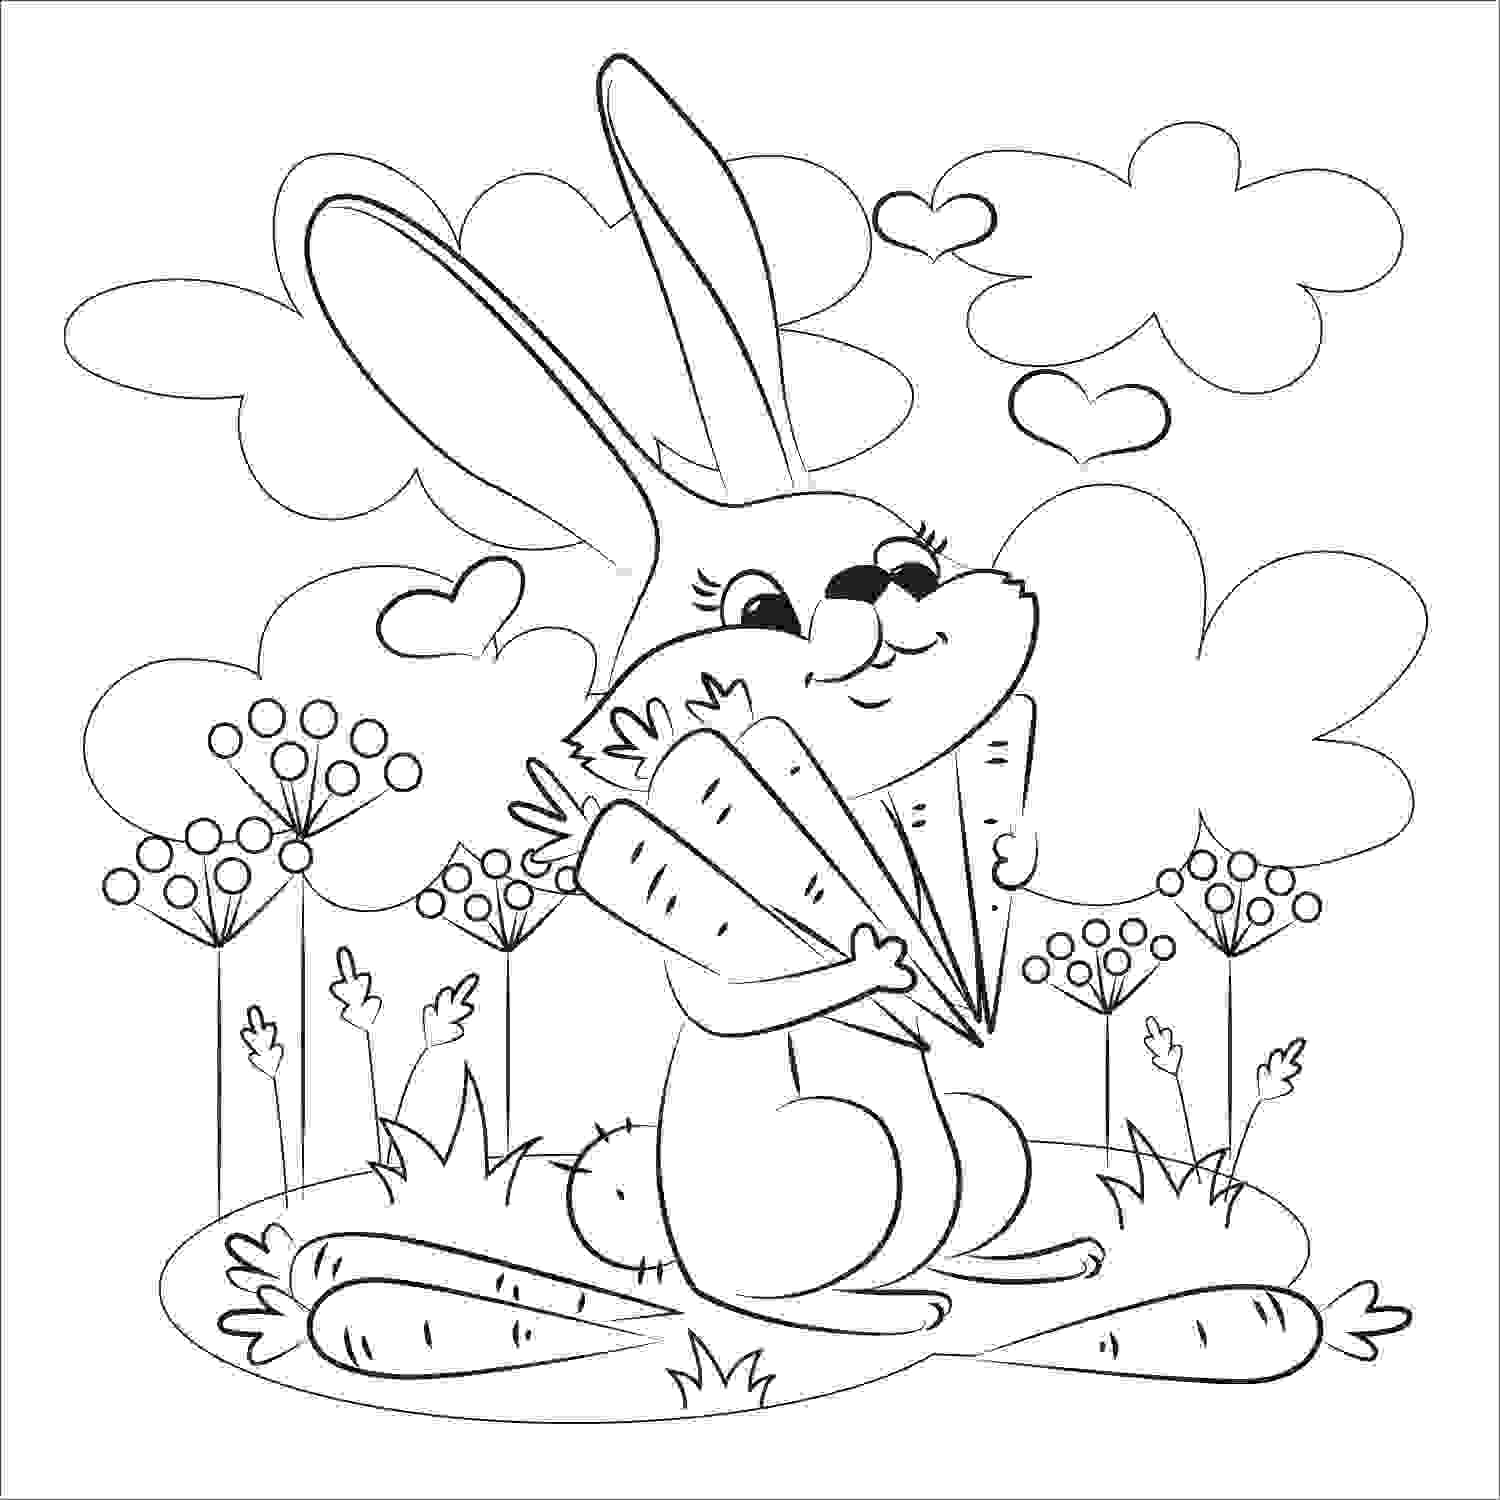 Bunny hat im Wald viele Karotten von Bunny gefunden